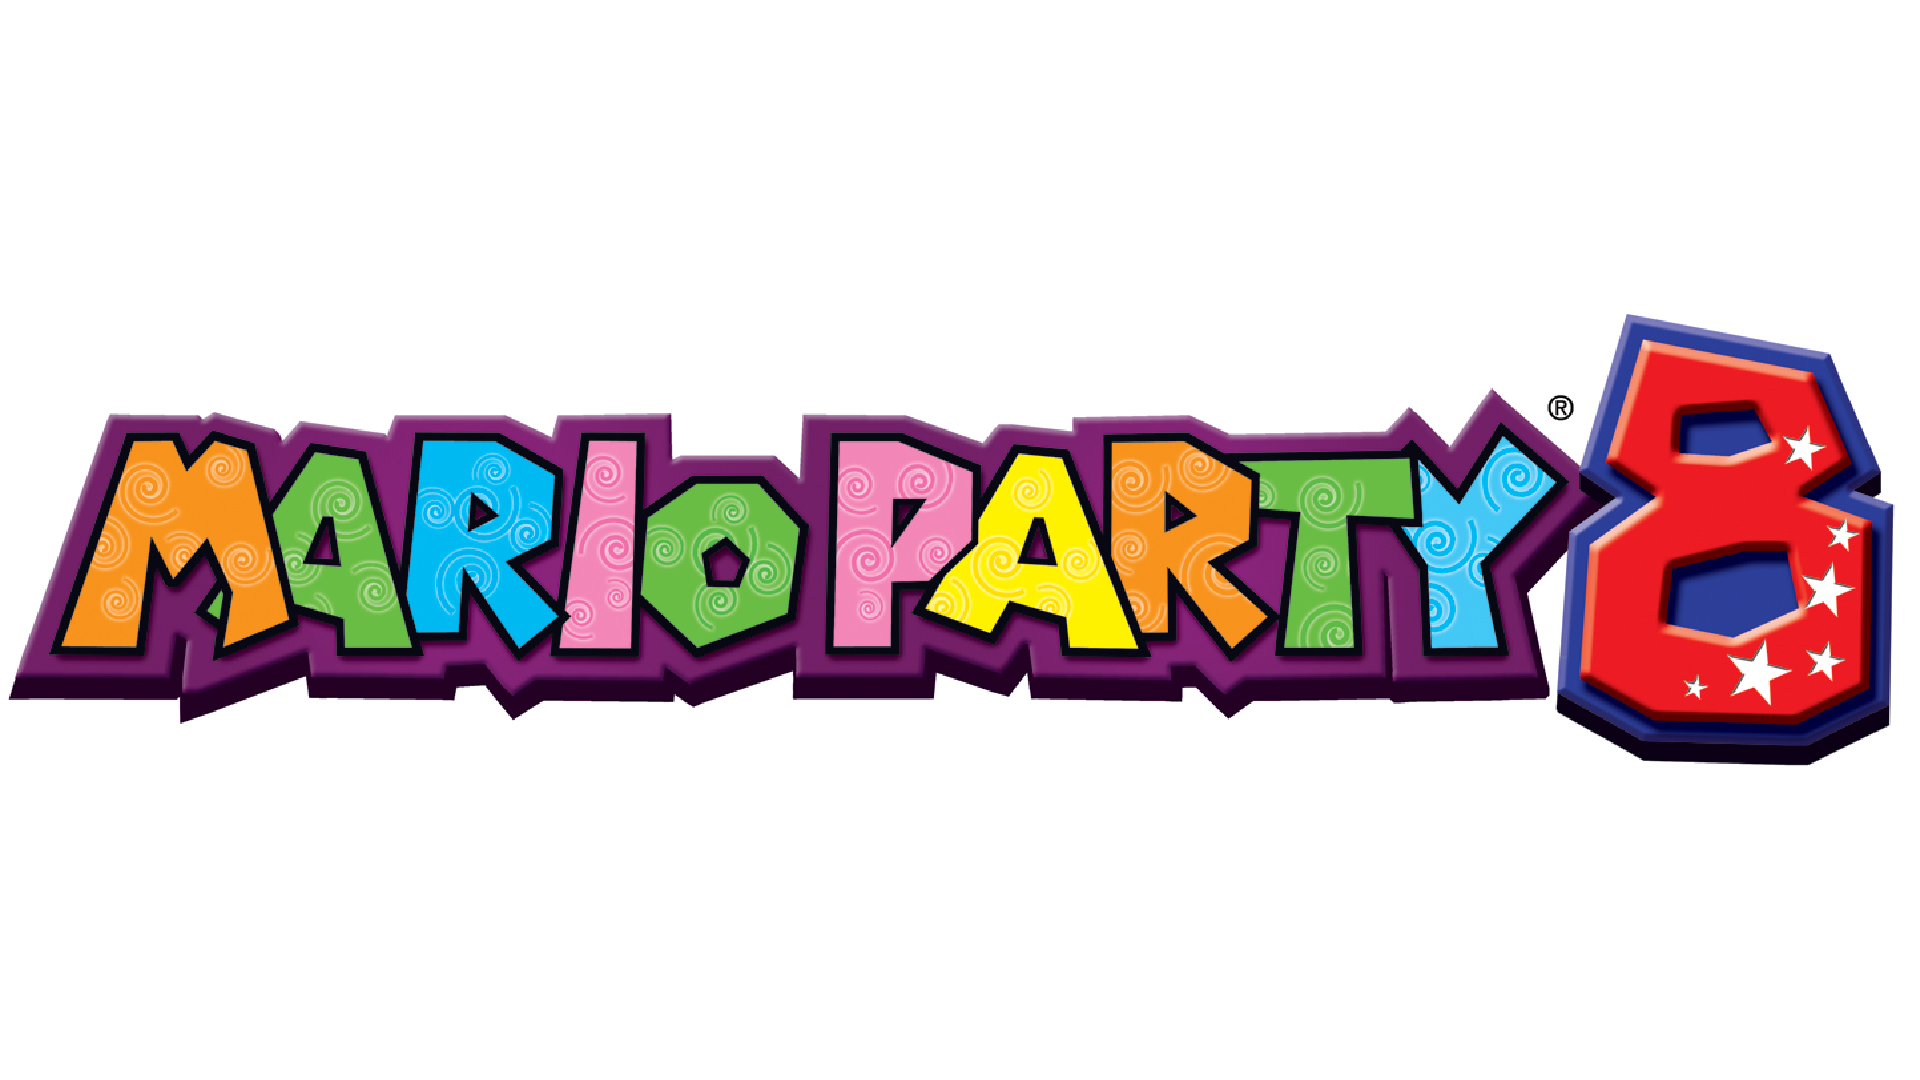 Mario Party 8 Logo